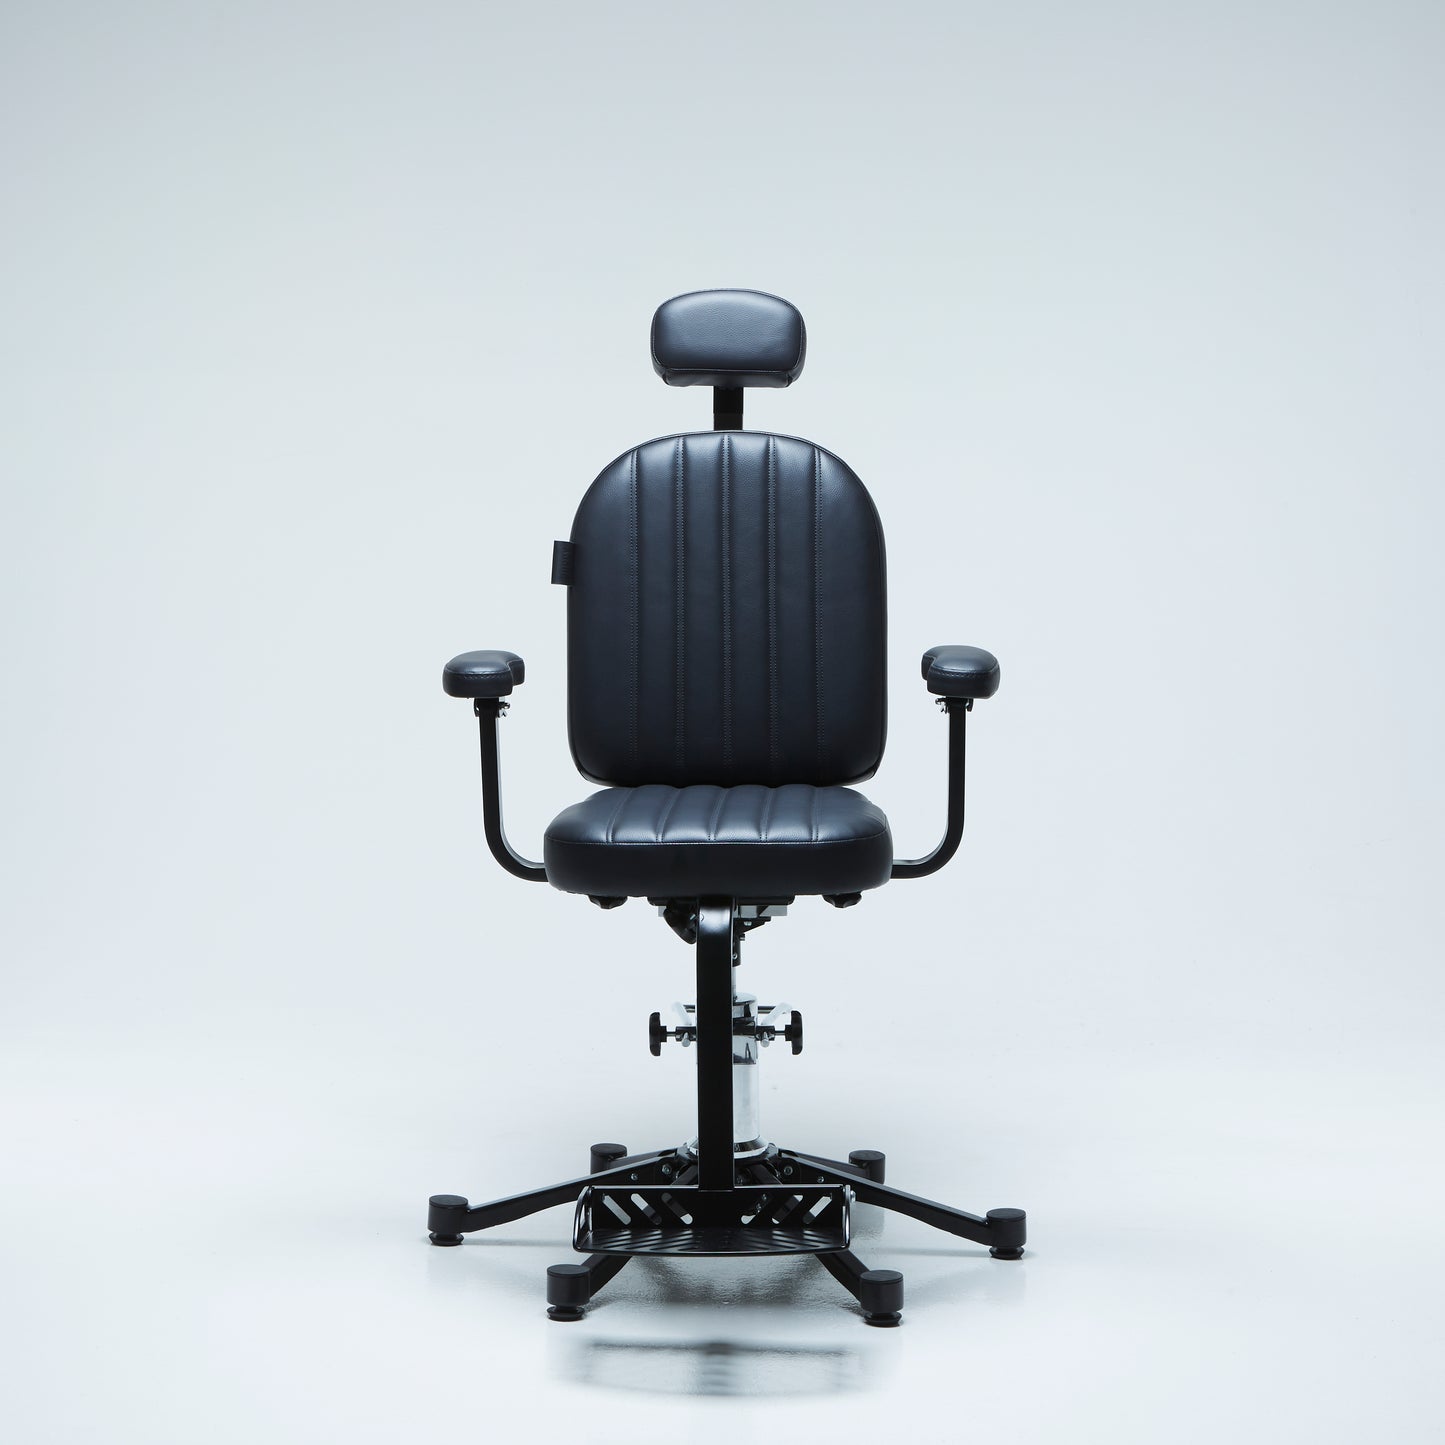 The Purcy Chair - 'Mark 2'